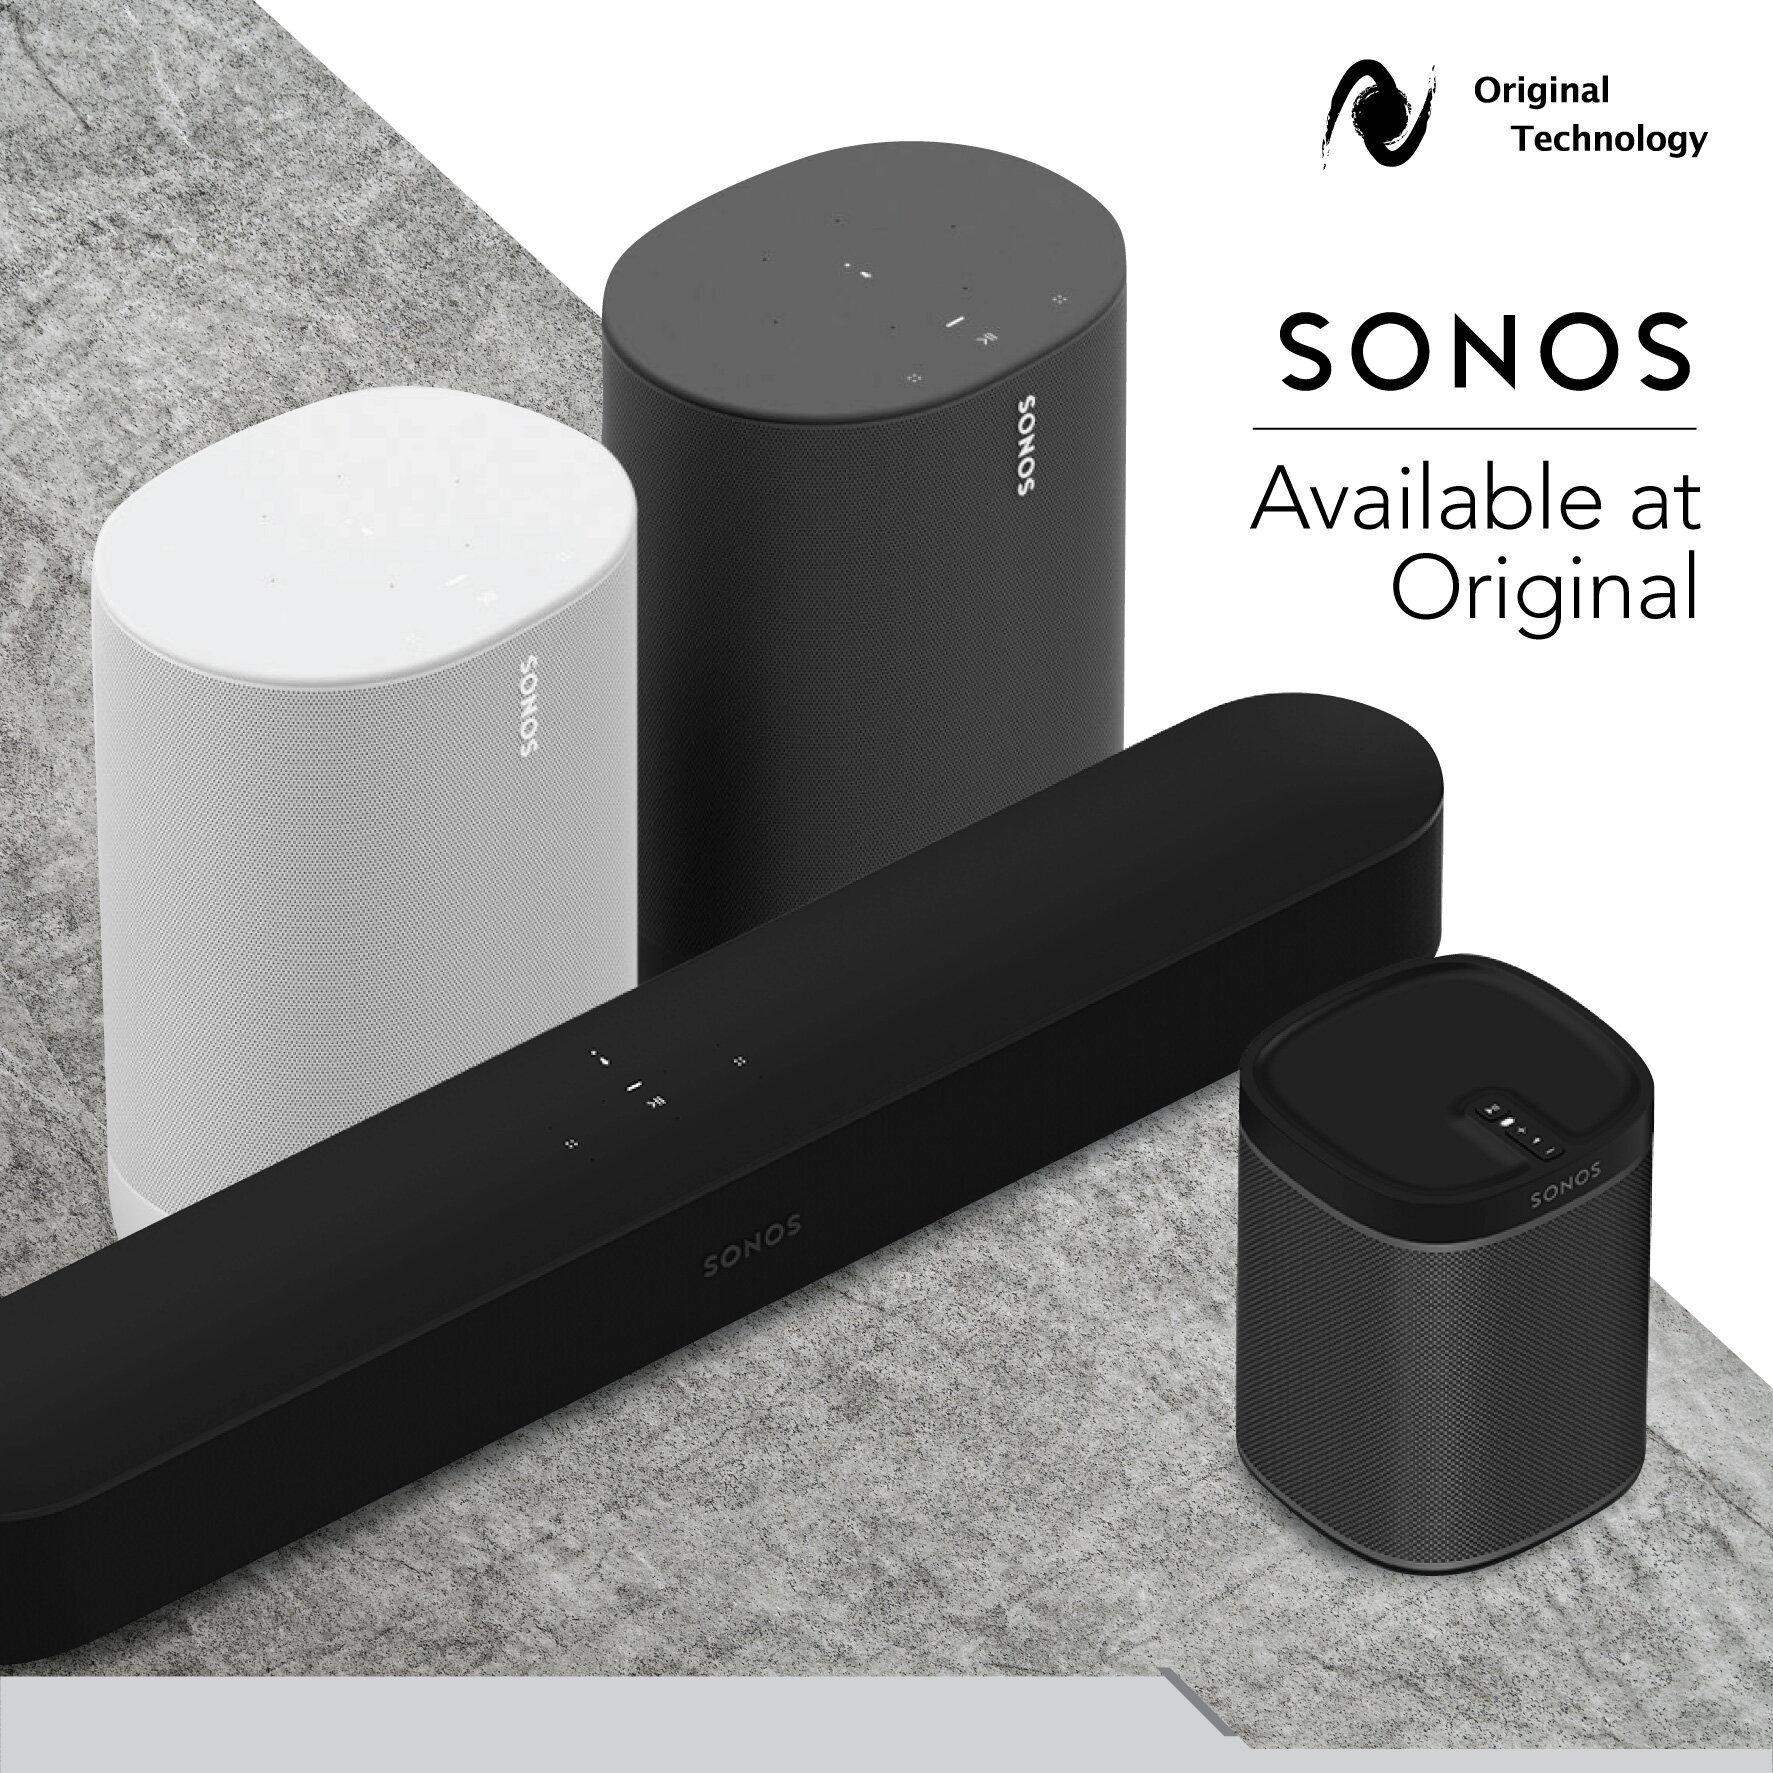 度身訂造家中的音樂空間 – Sonos 喇叭系列